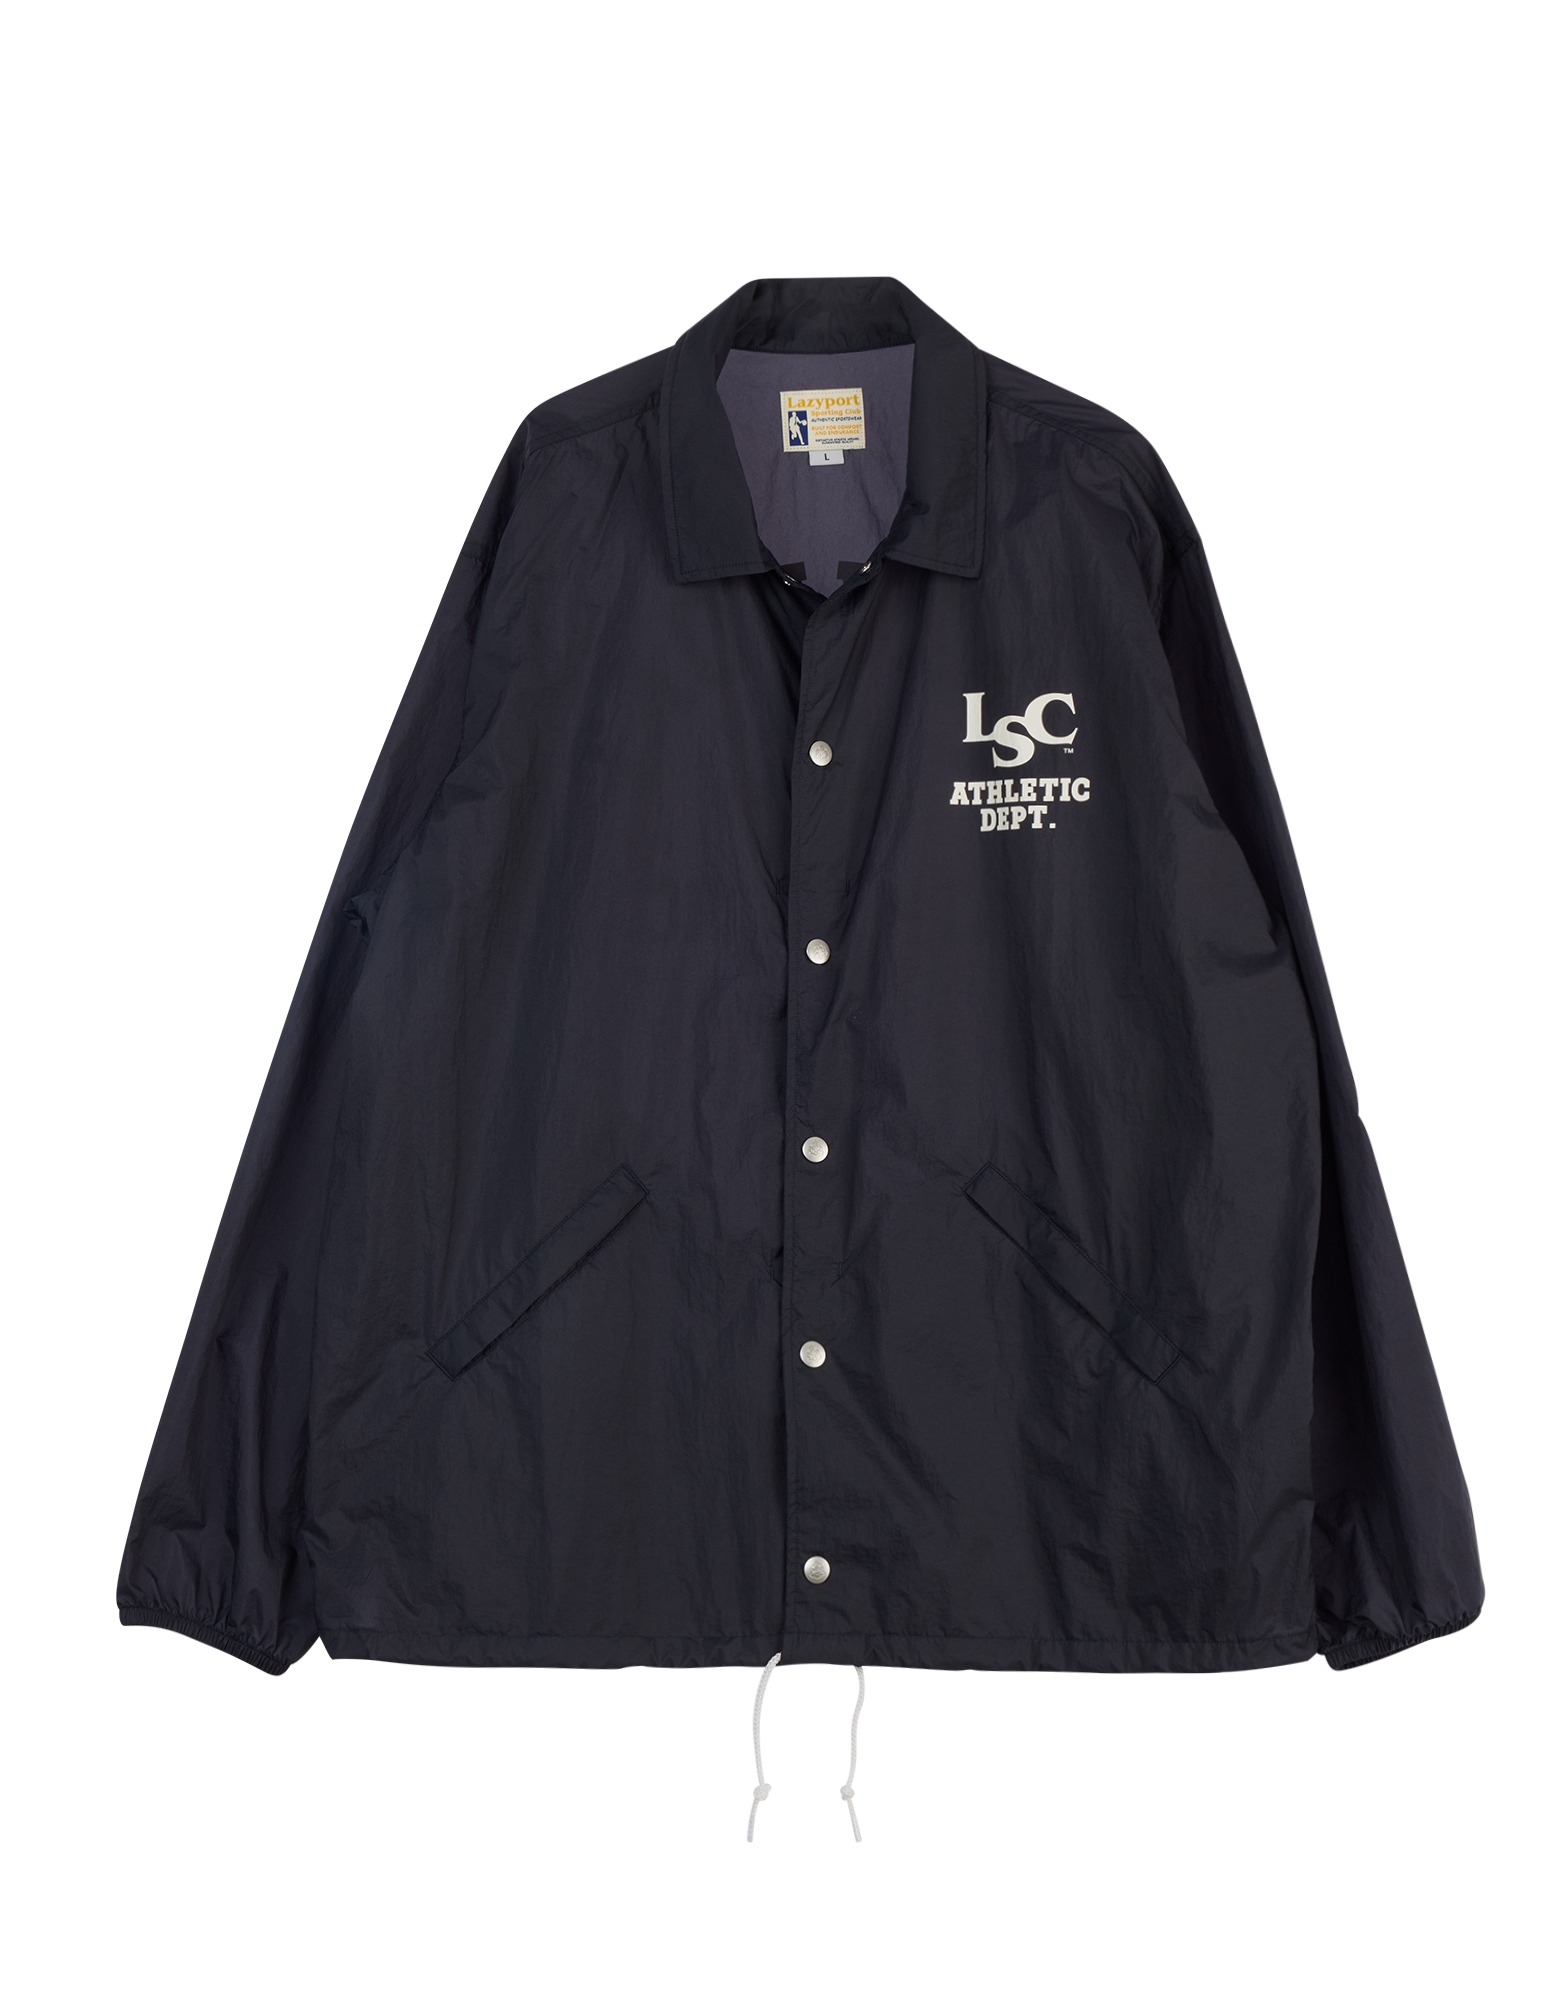 LSC Coach Jacket (Navy)